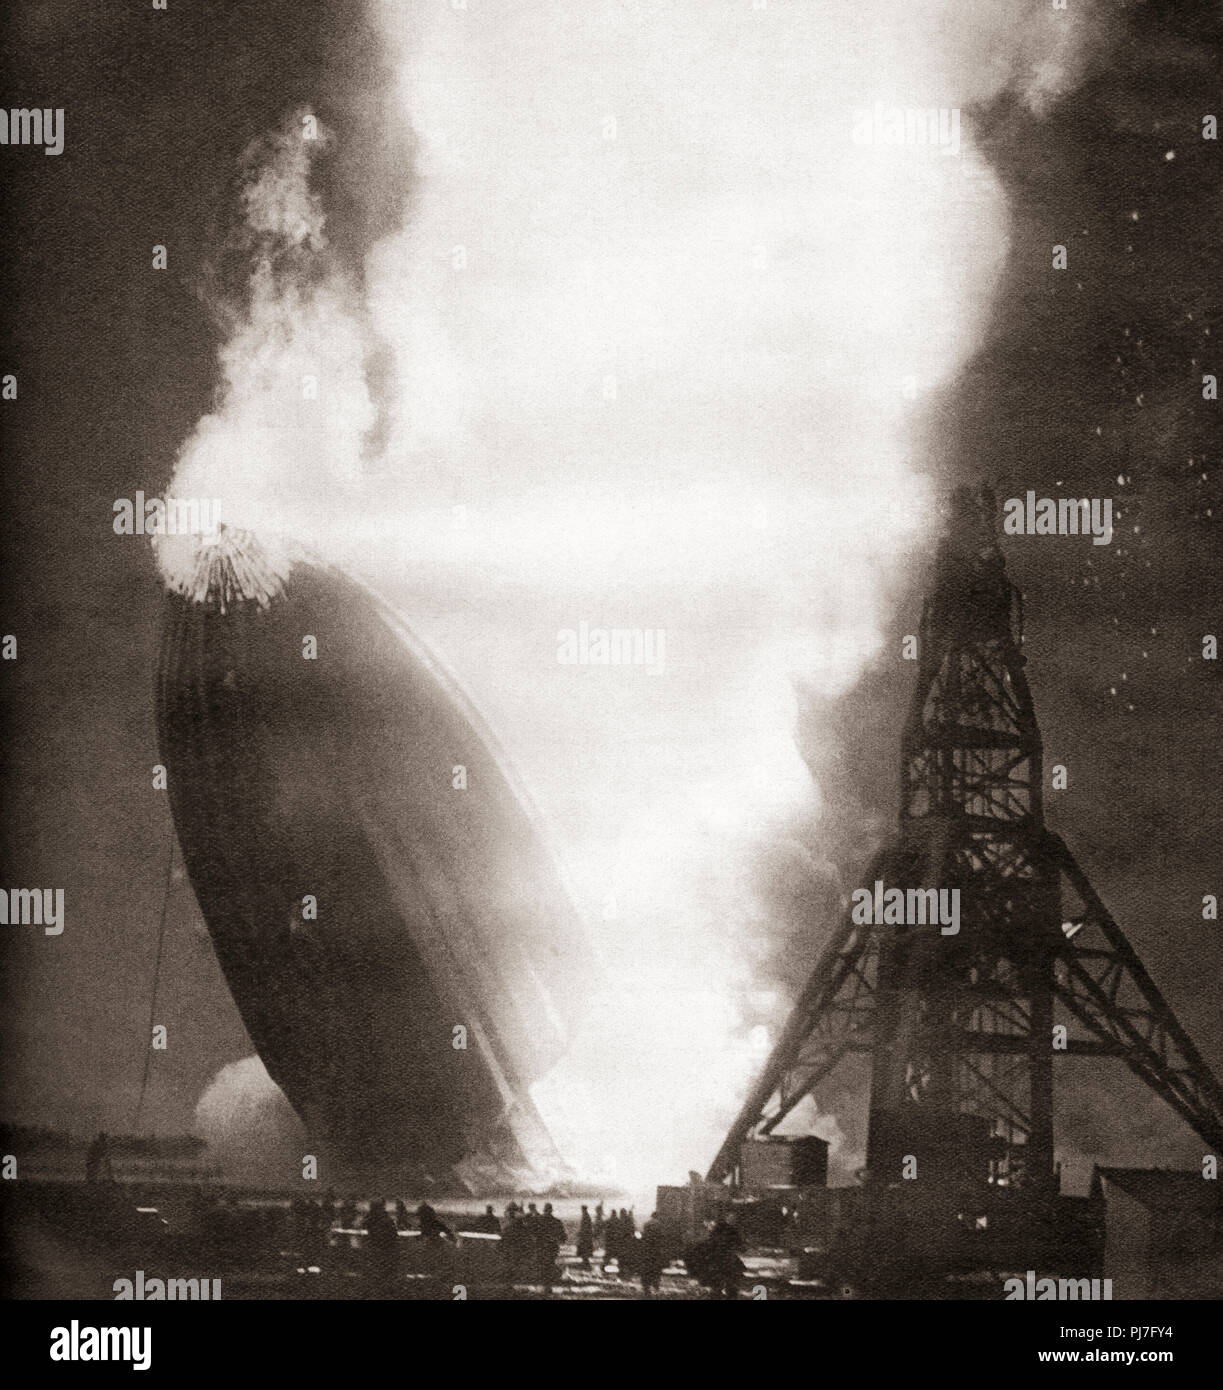 La catastrophe du Hindenburg, le 6 mai 1937. Le dirigeable allemand LZ 129 Hindenburg prend feu et se détruit tout en essayant d'arrimer à son mât d'amarrage à la Naval Air Station Lakehurst, Manchester Township, New Jersey, États-Unis d'Amérique. À partir de ces années, publié en 1938. Banque D'Images